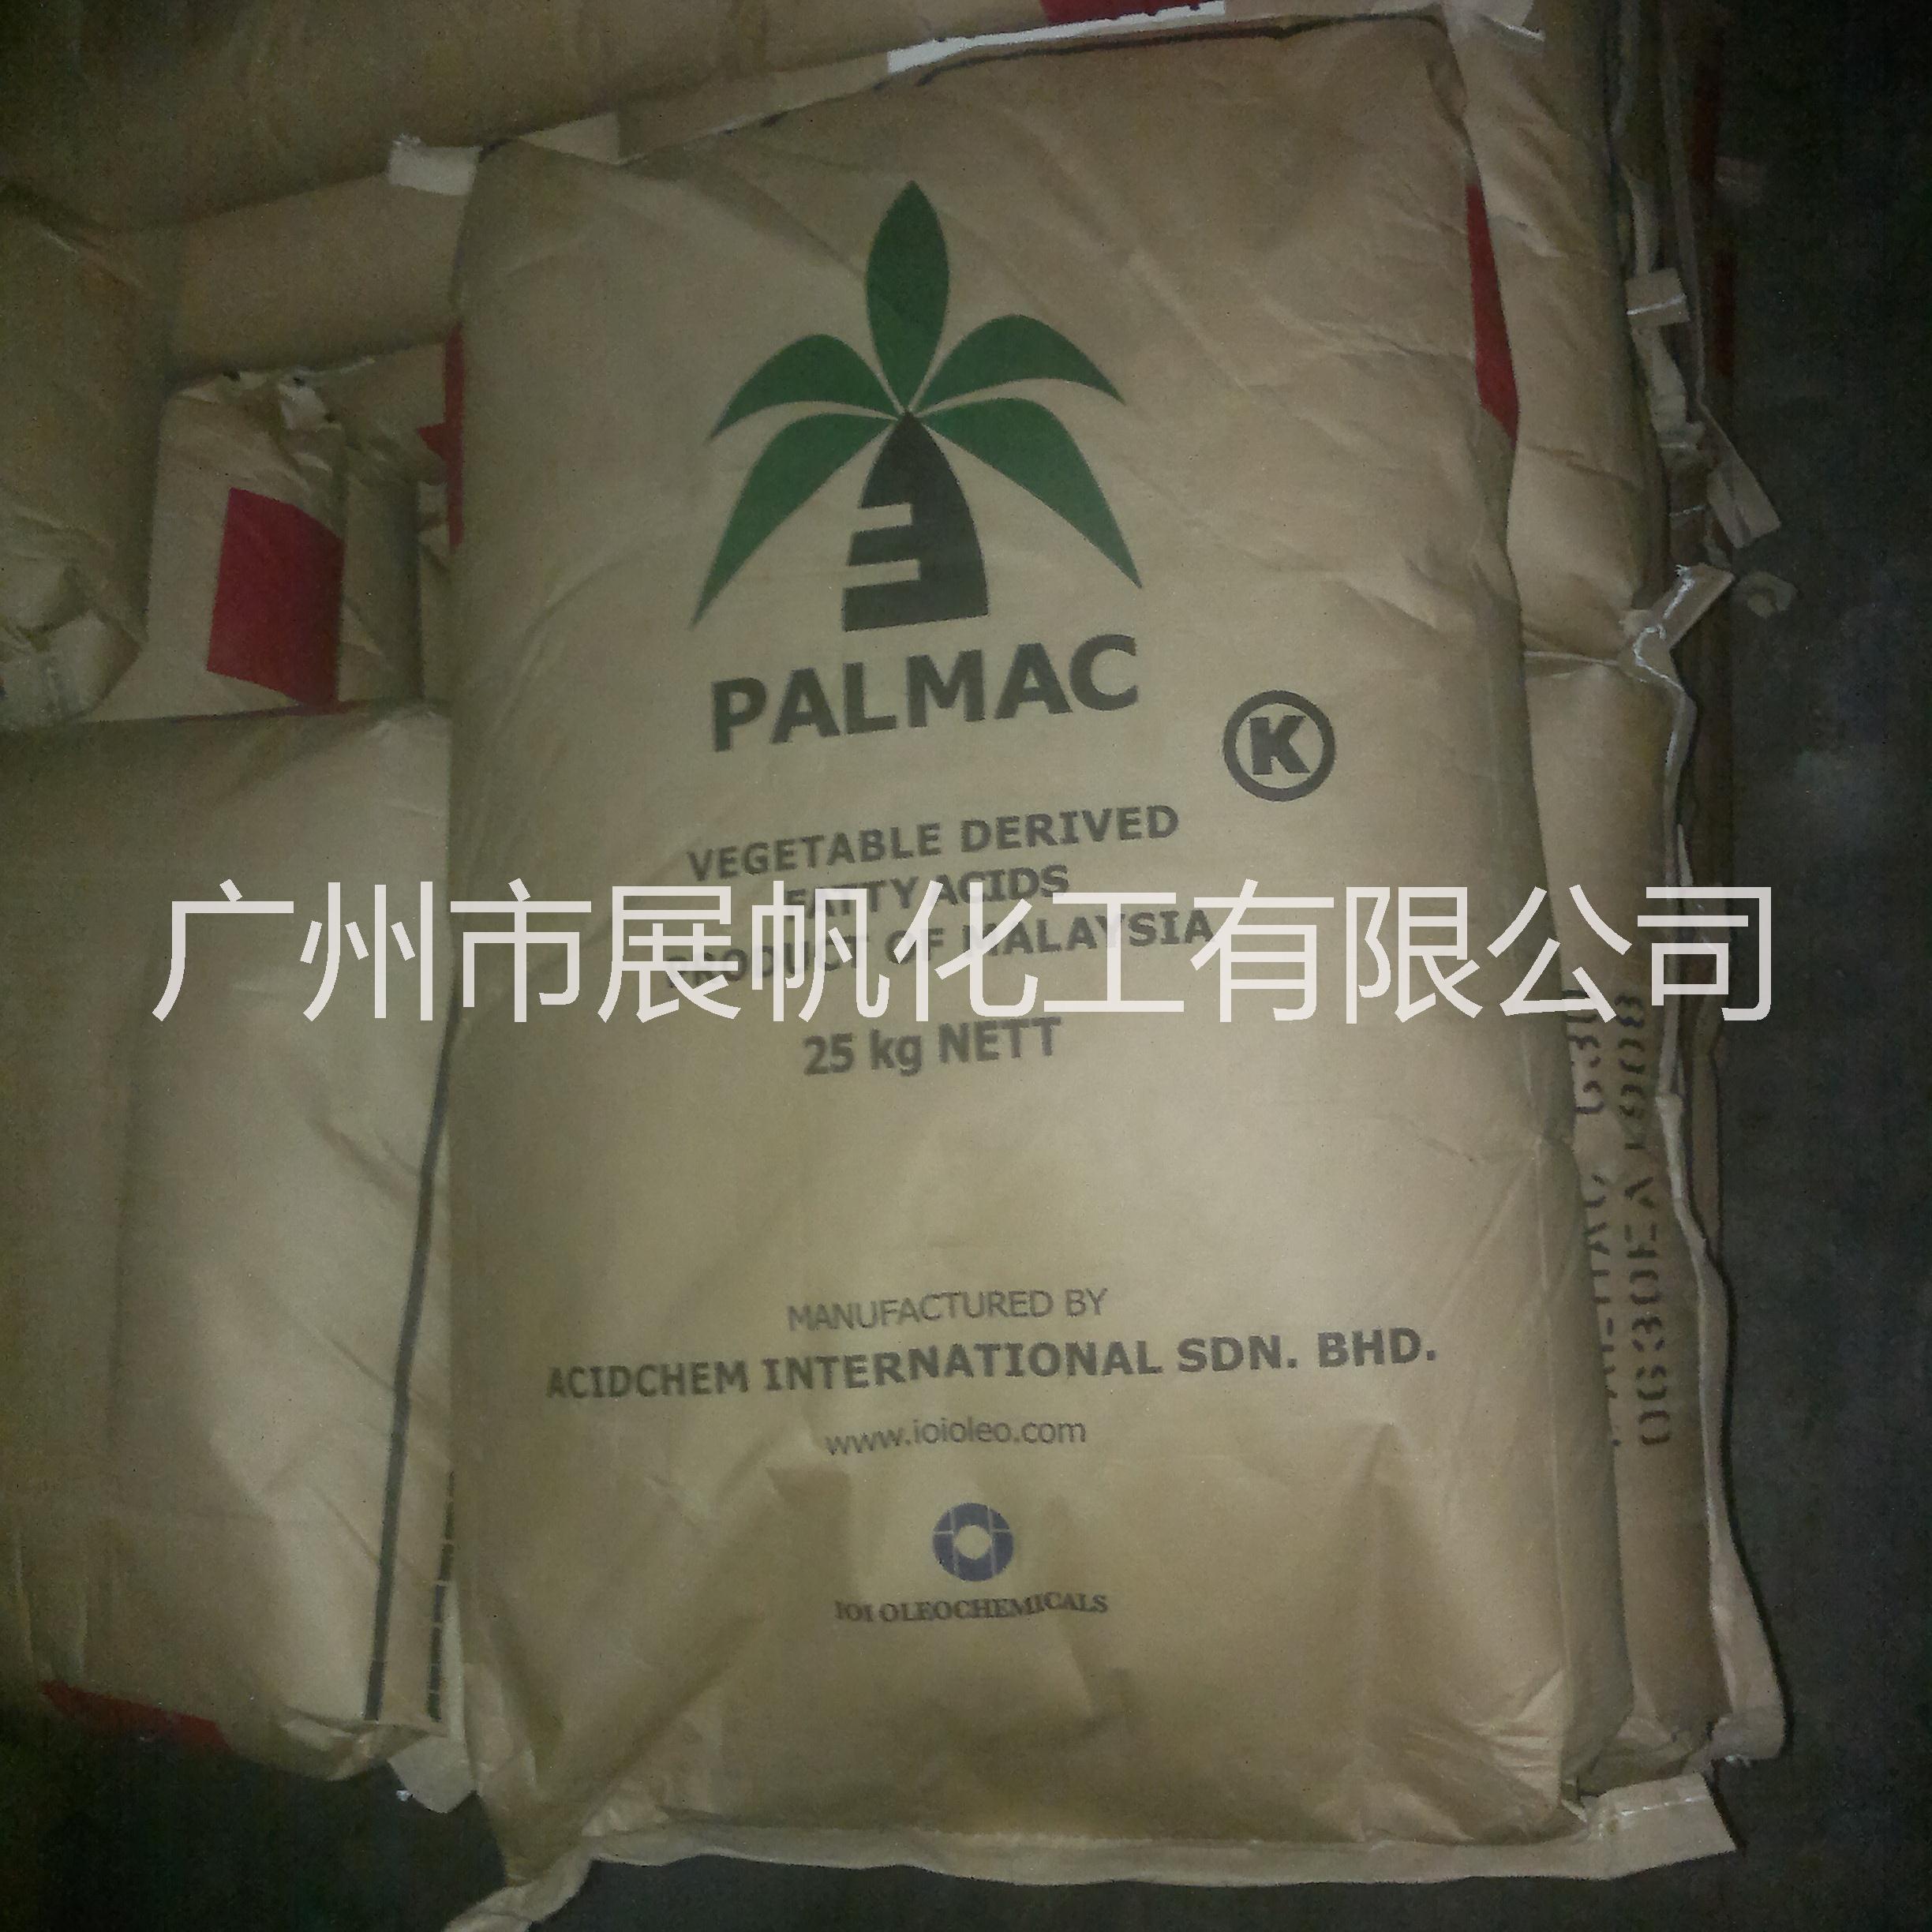 原装进口马来西亚椰树牌硬脂酸1801 广州代理椰树硬脂酸630